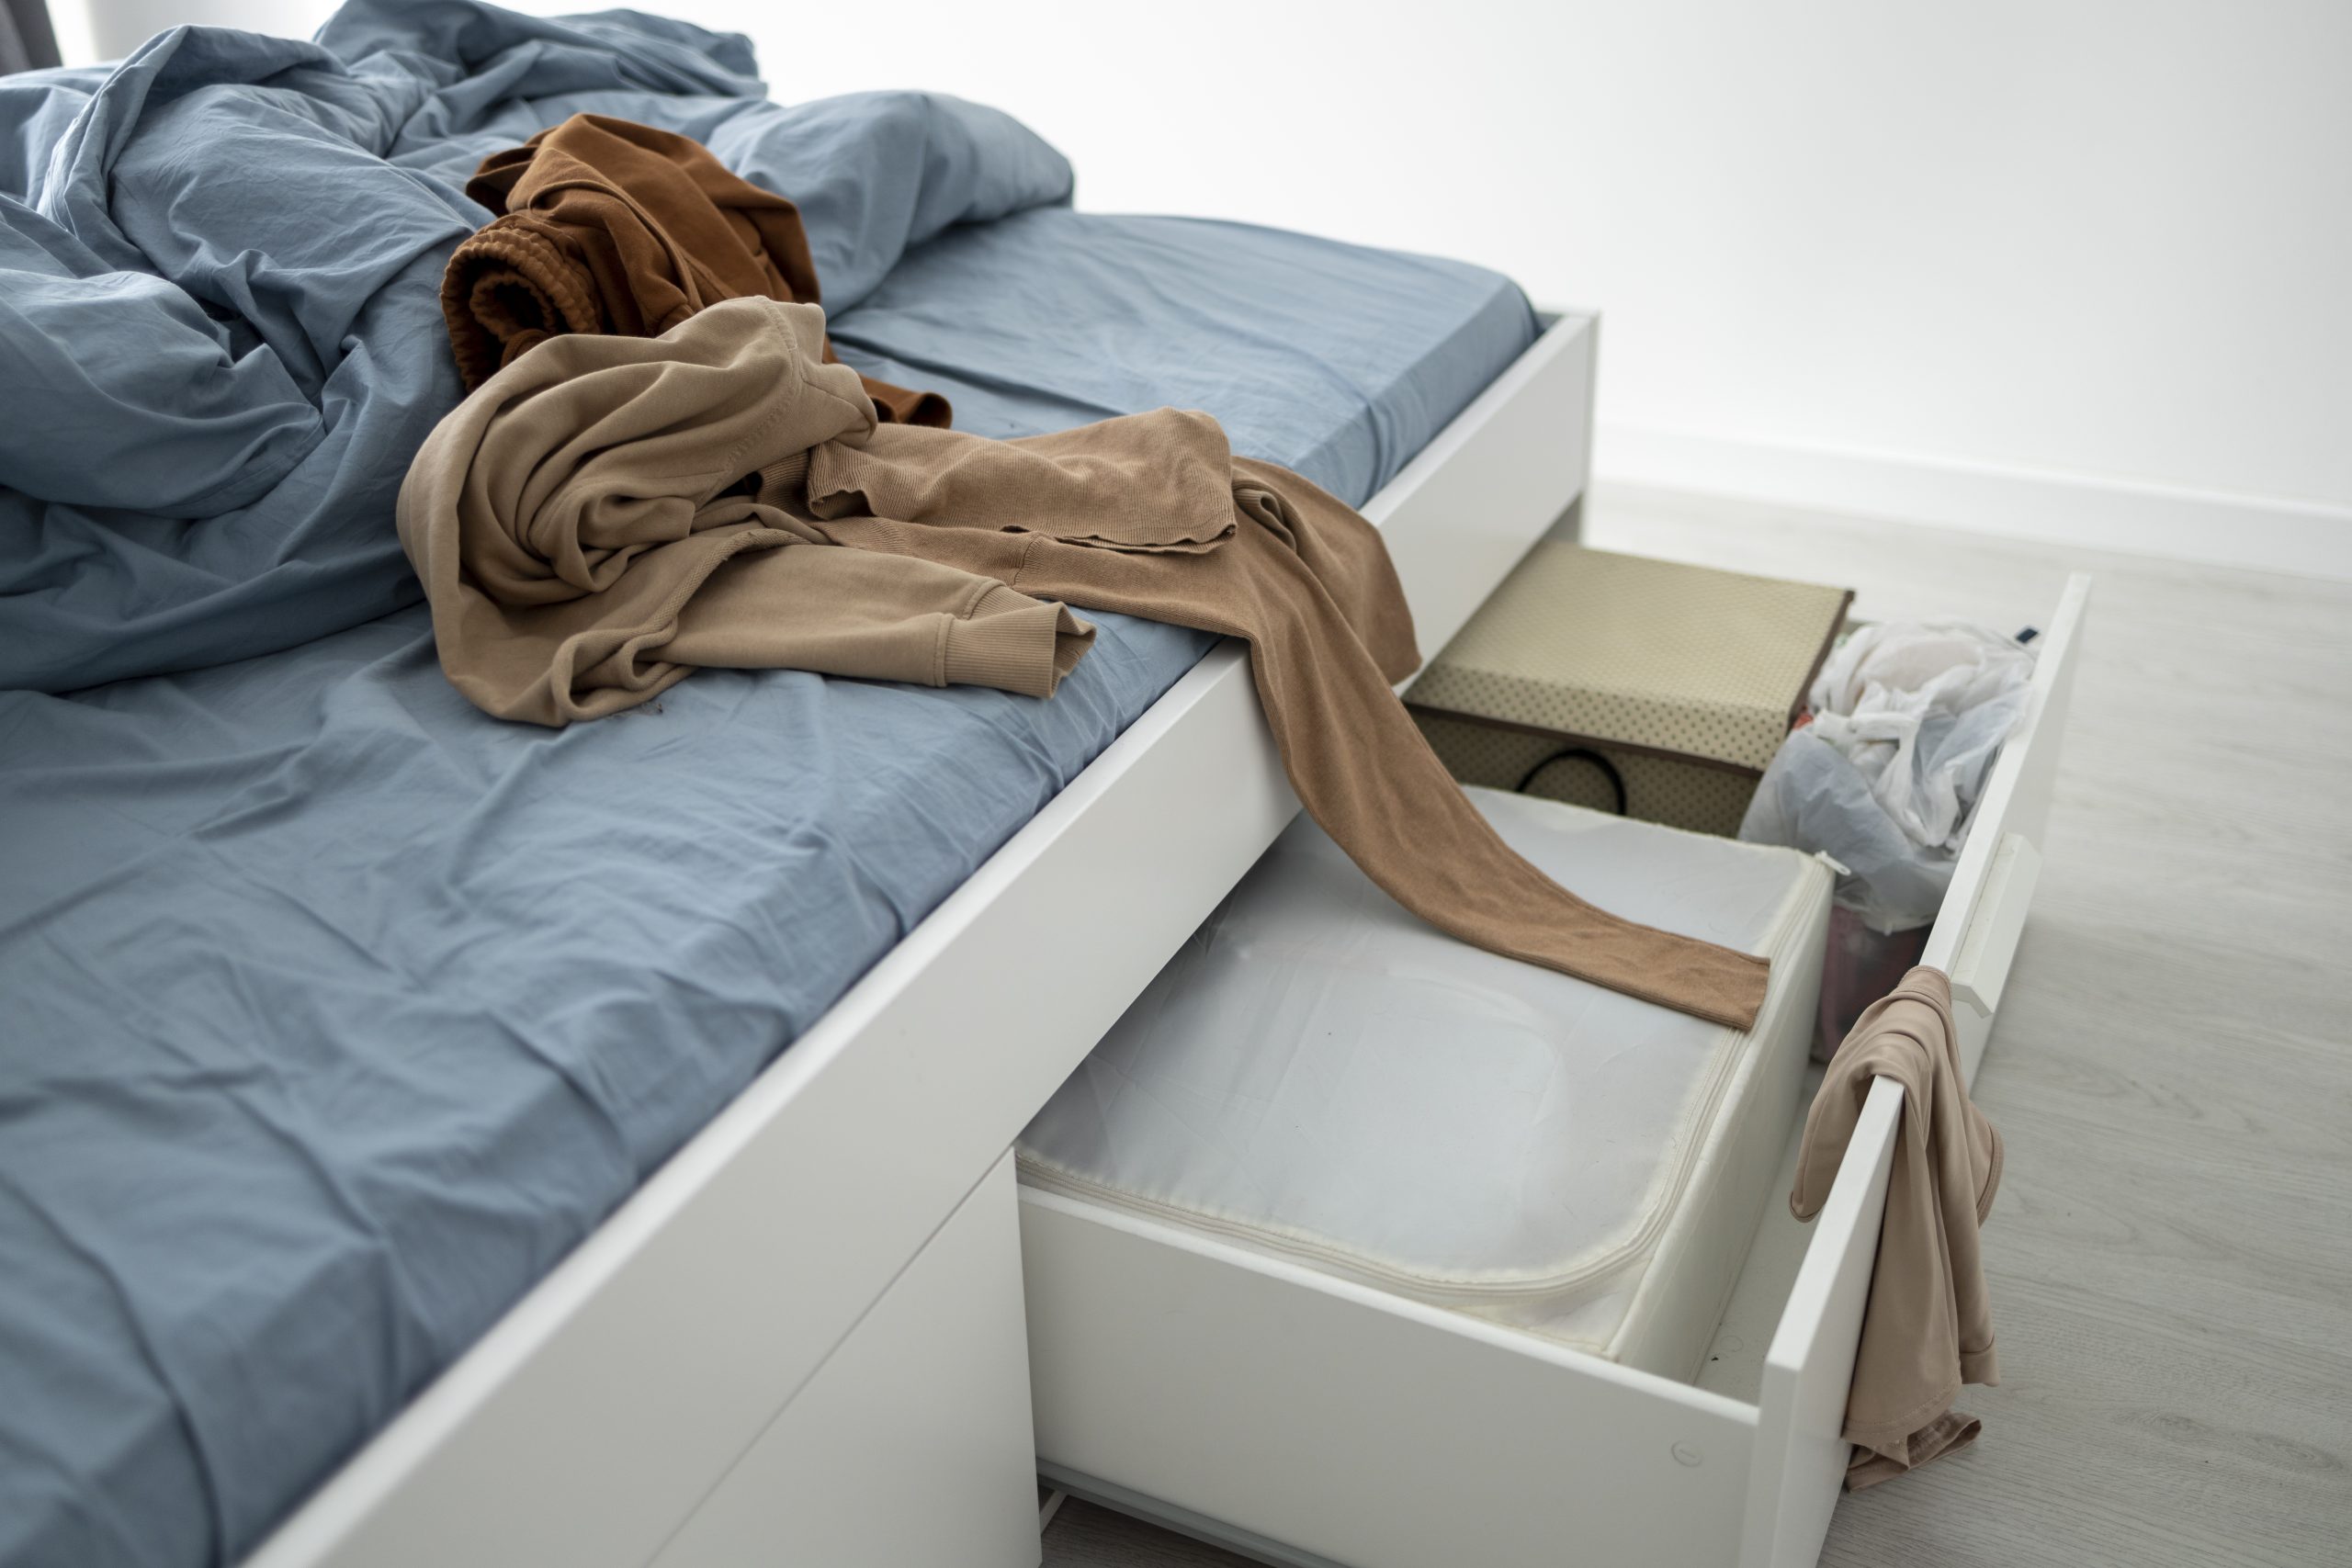 Drewniane łóżka z szufladami